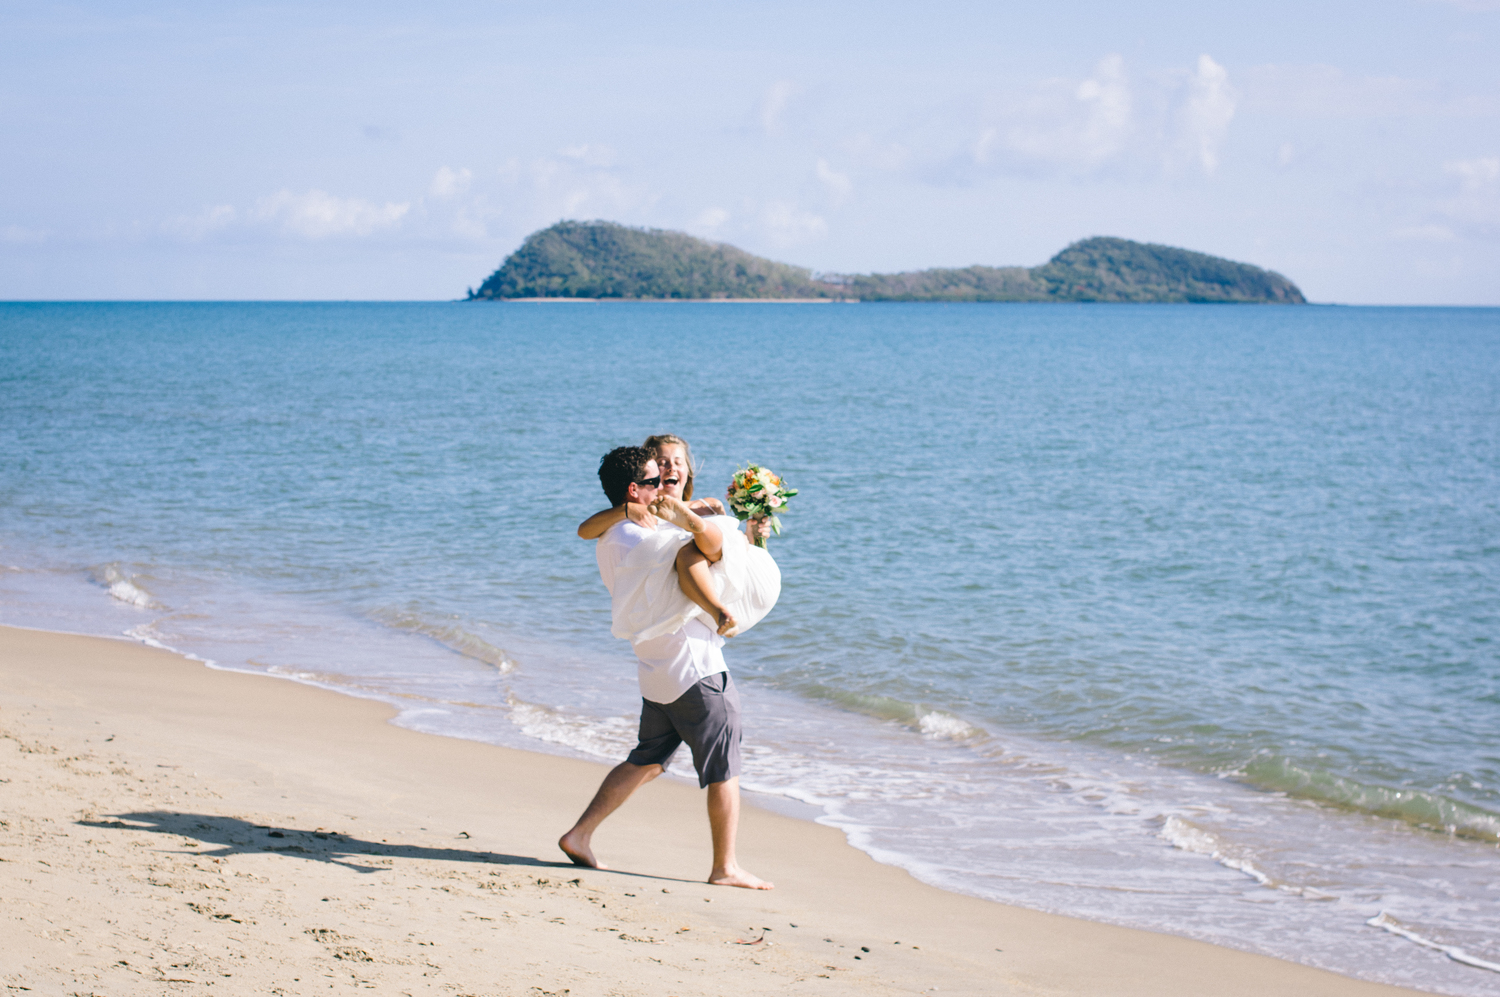 Craig + Ines analogue Cairns beach elopement